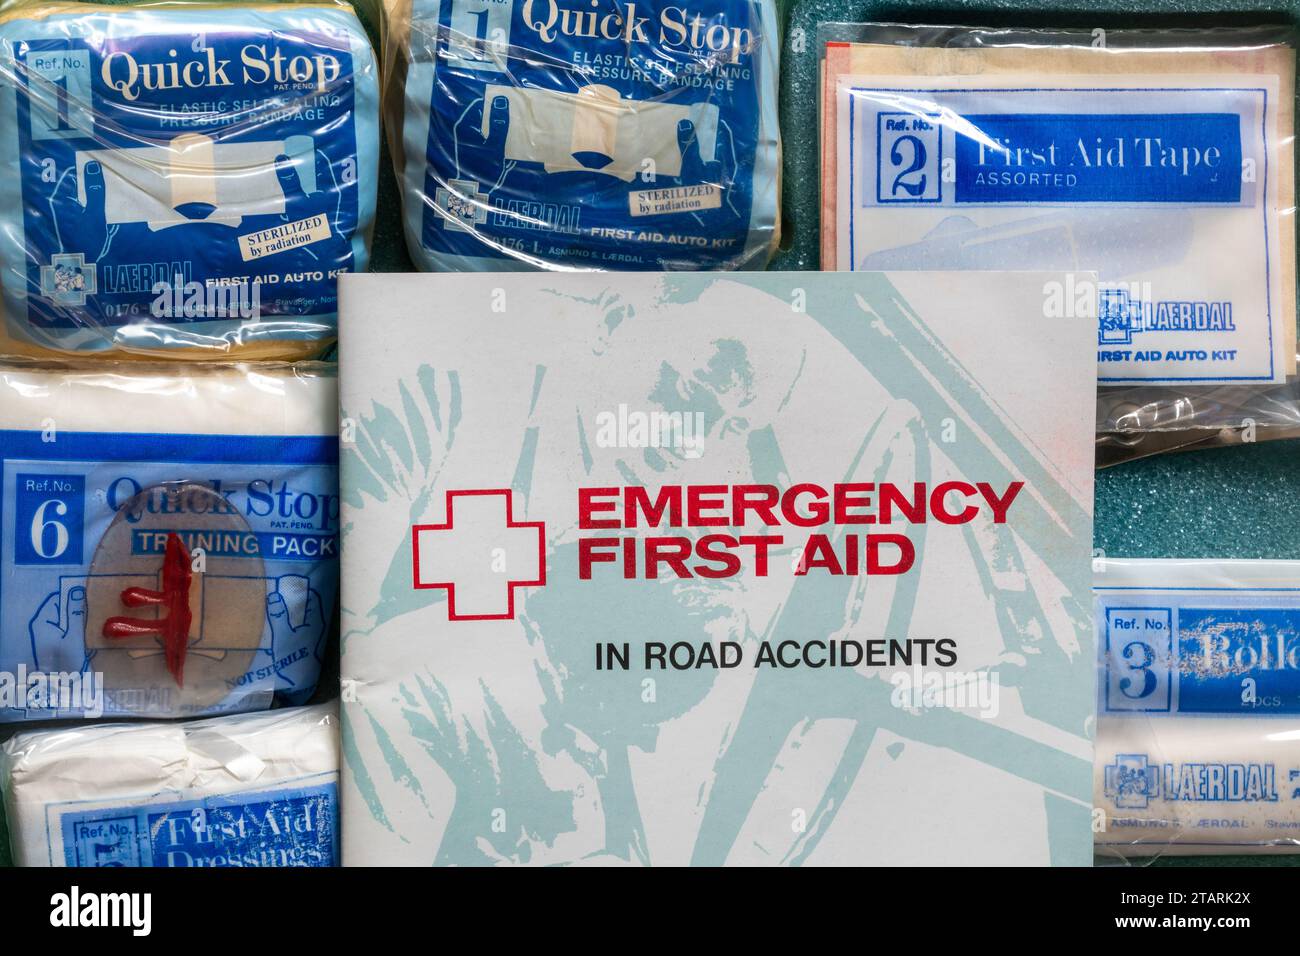 Trousse de premiers soins d'urgence pour automobilistes, y compris des instructions pour les accidents de la route et des pansements Banque D'Images